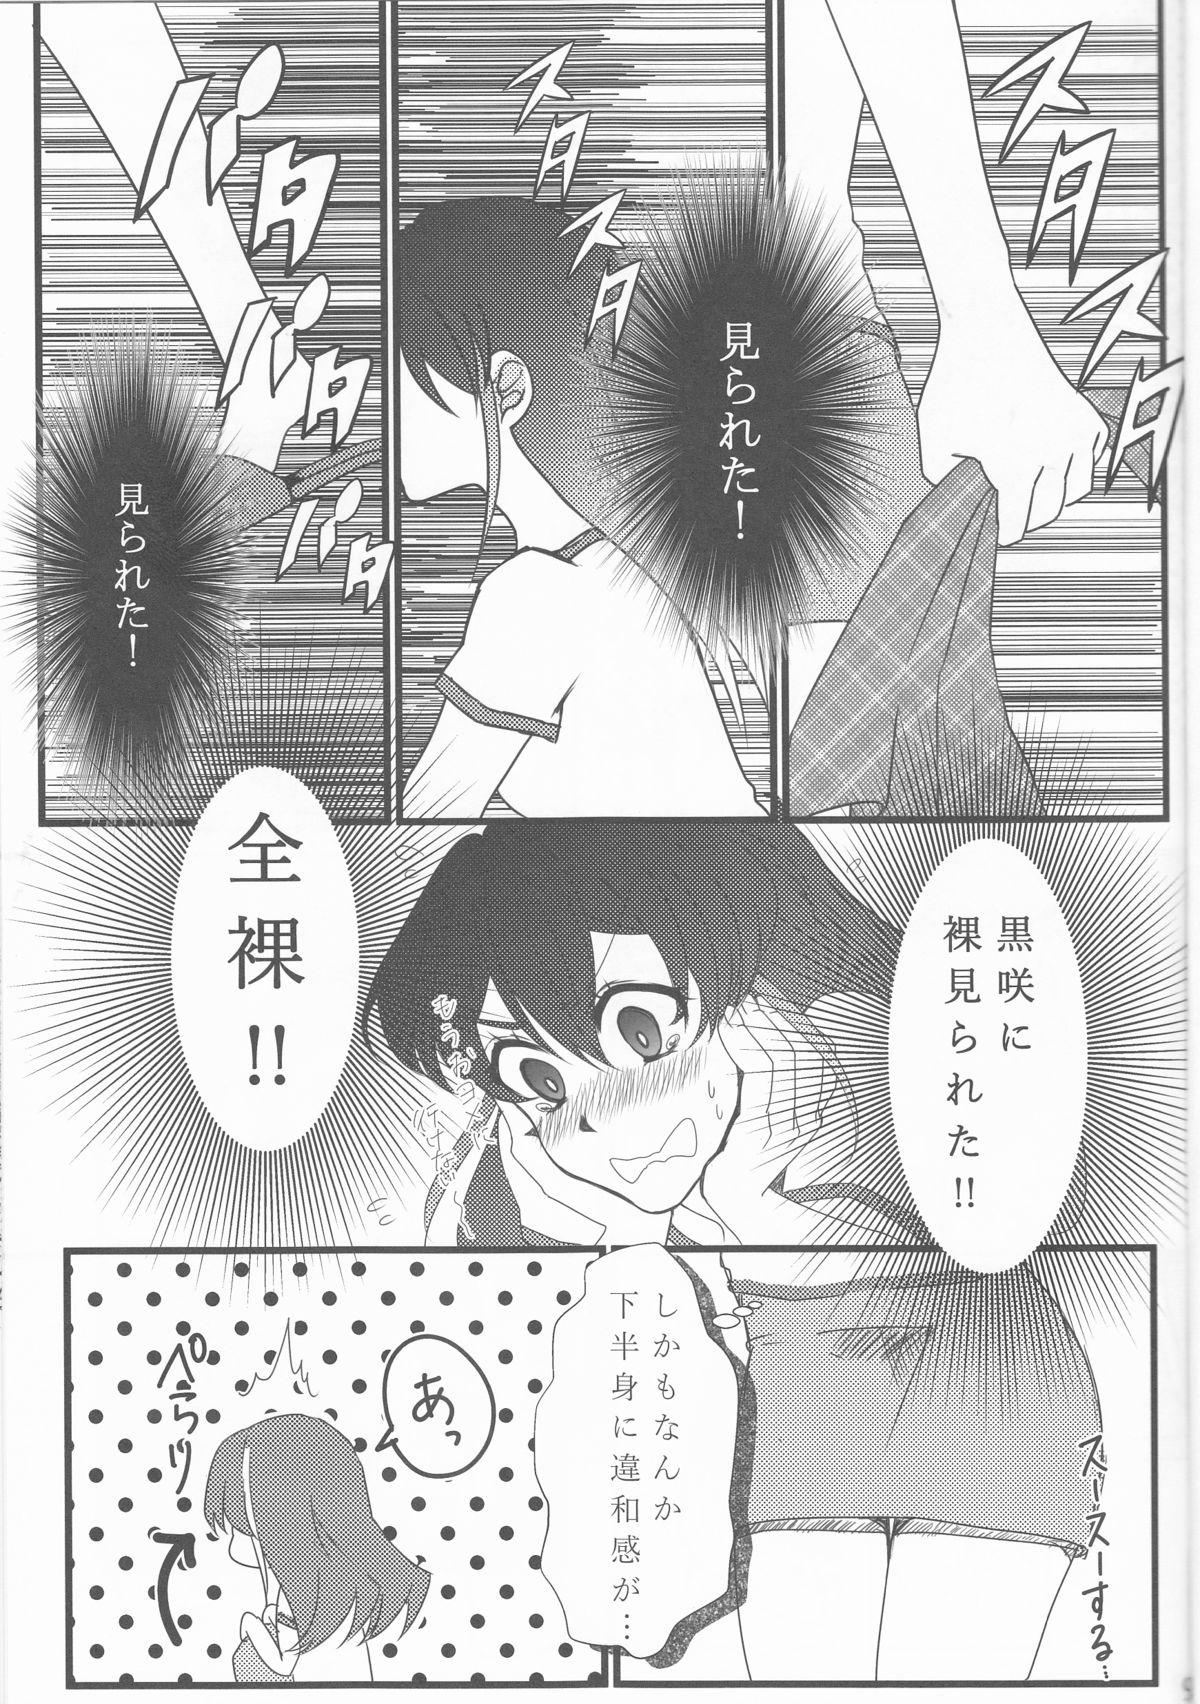 Neighbor Hoshoku Kankei ni Aru Serena to Shun ga Renai Kanjou o Idaku to Kou Naru. - Yu gi oh arc v Home - Page 10